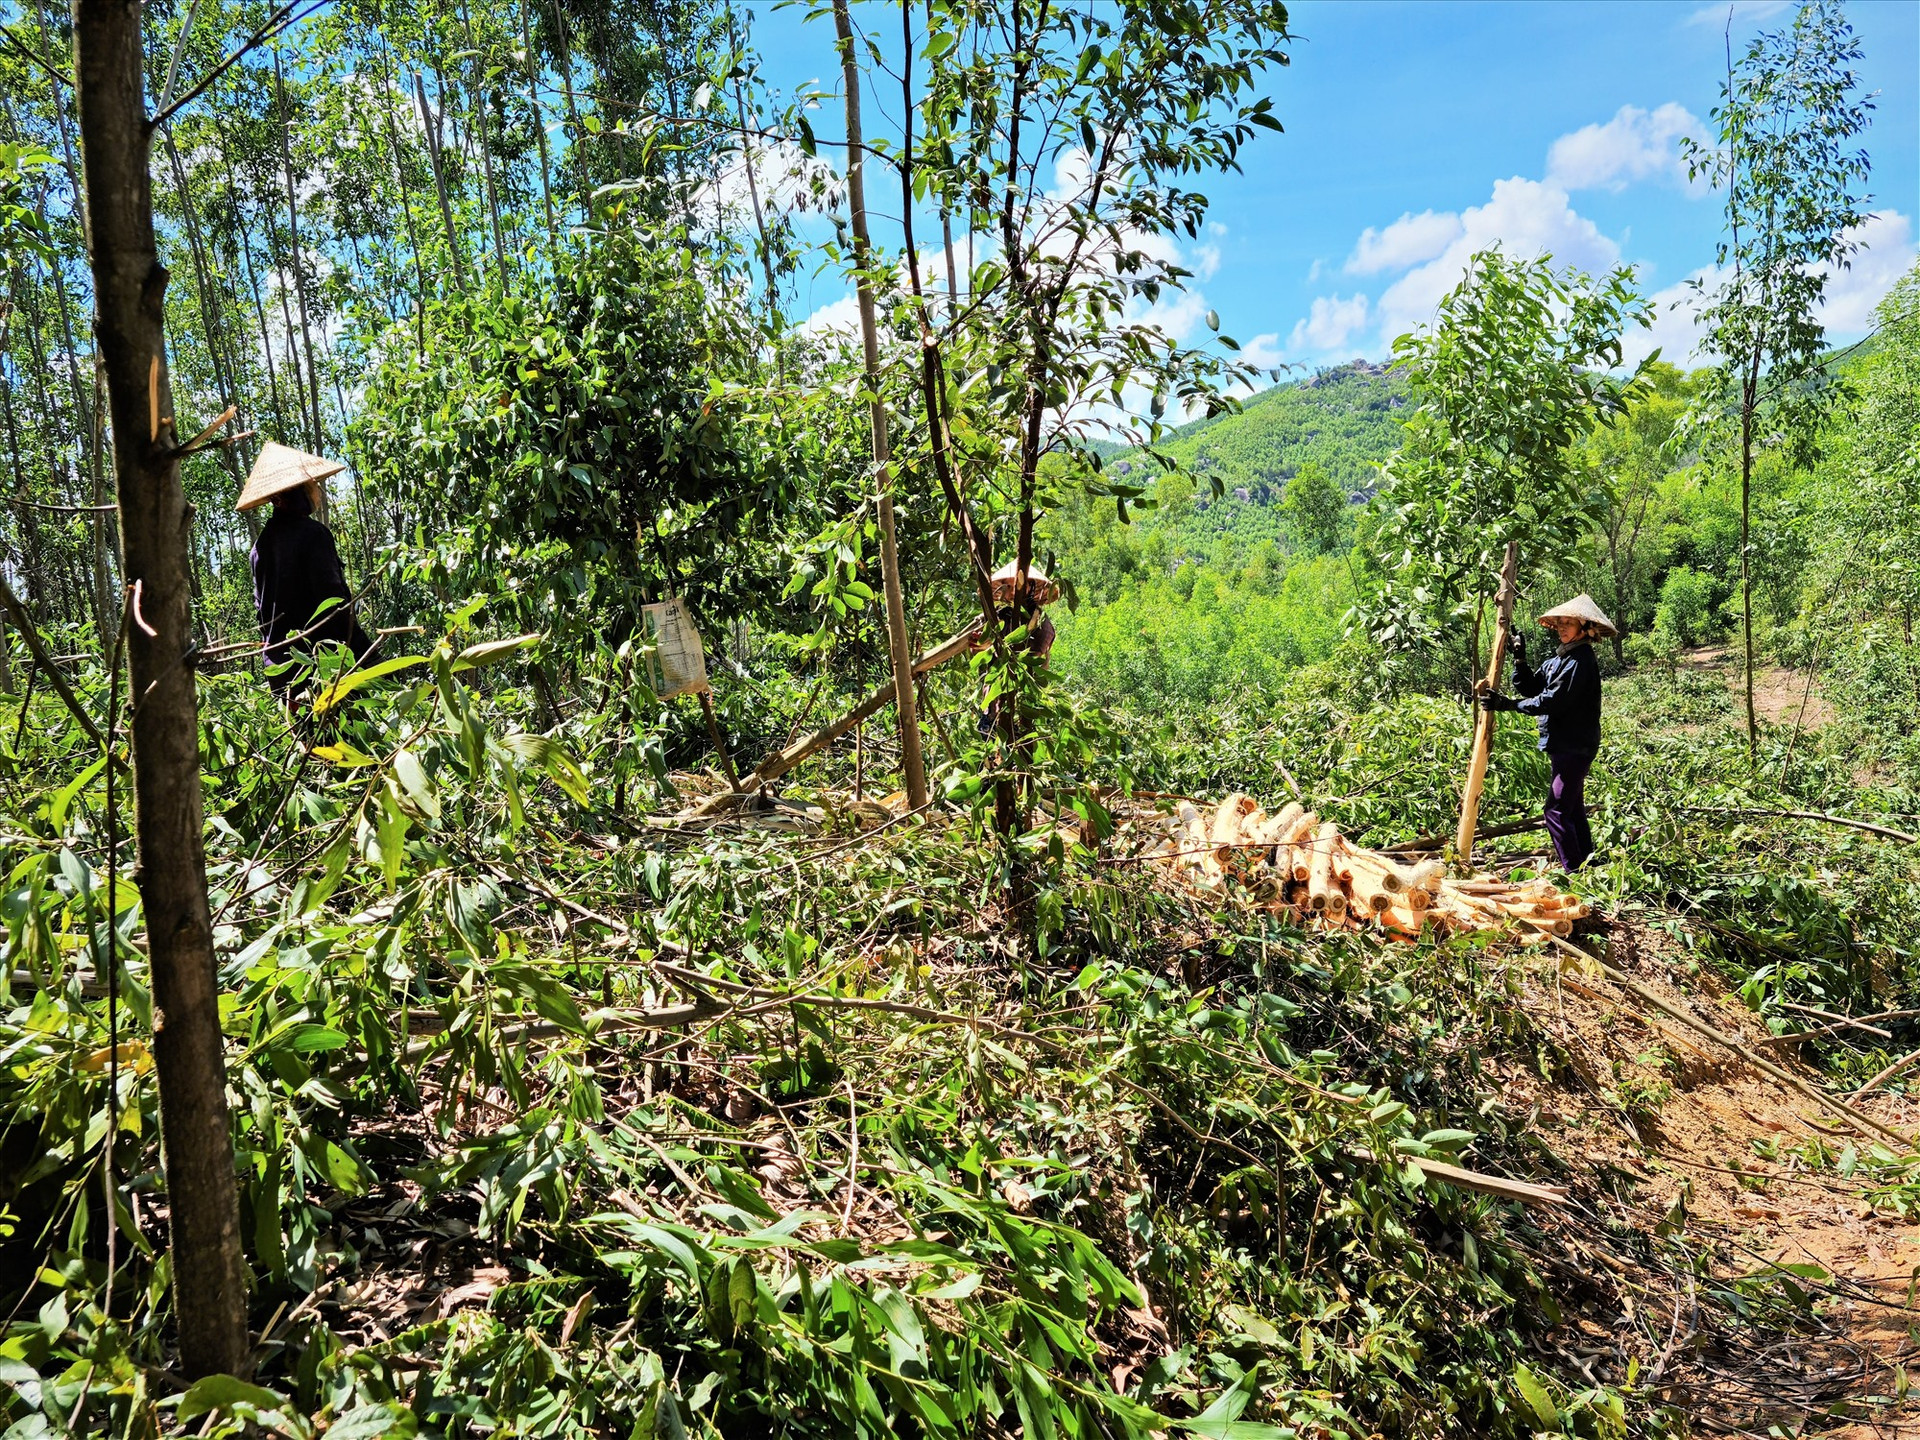 Mô hình trồng rừng gỗ lớn theo tiêu chuẩn quốc tế được xem là hướng đi hiệu quả của ngành lâm nghiệp. Ảnh: T.N